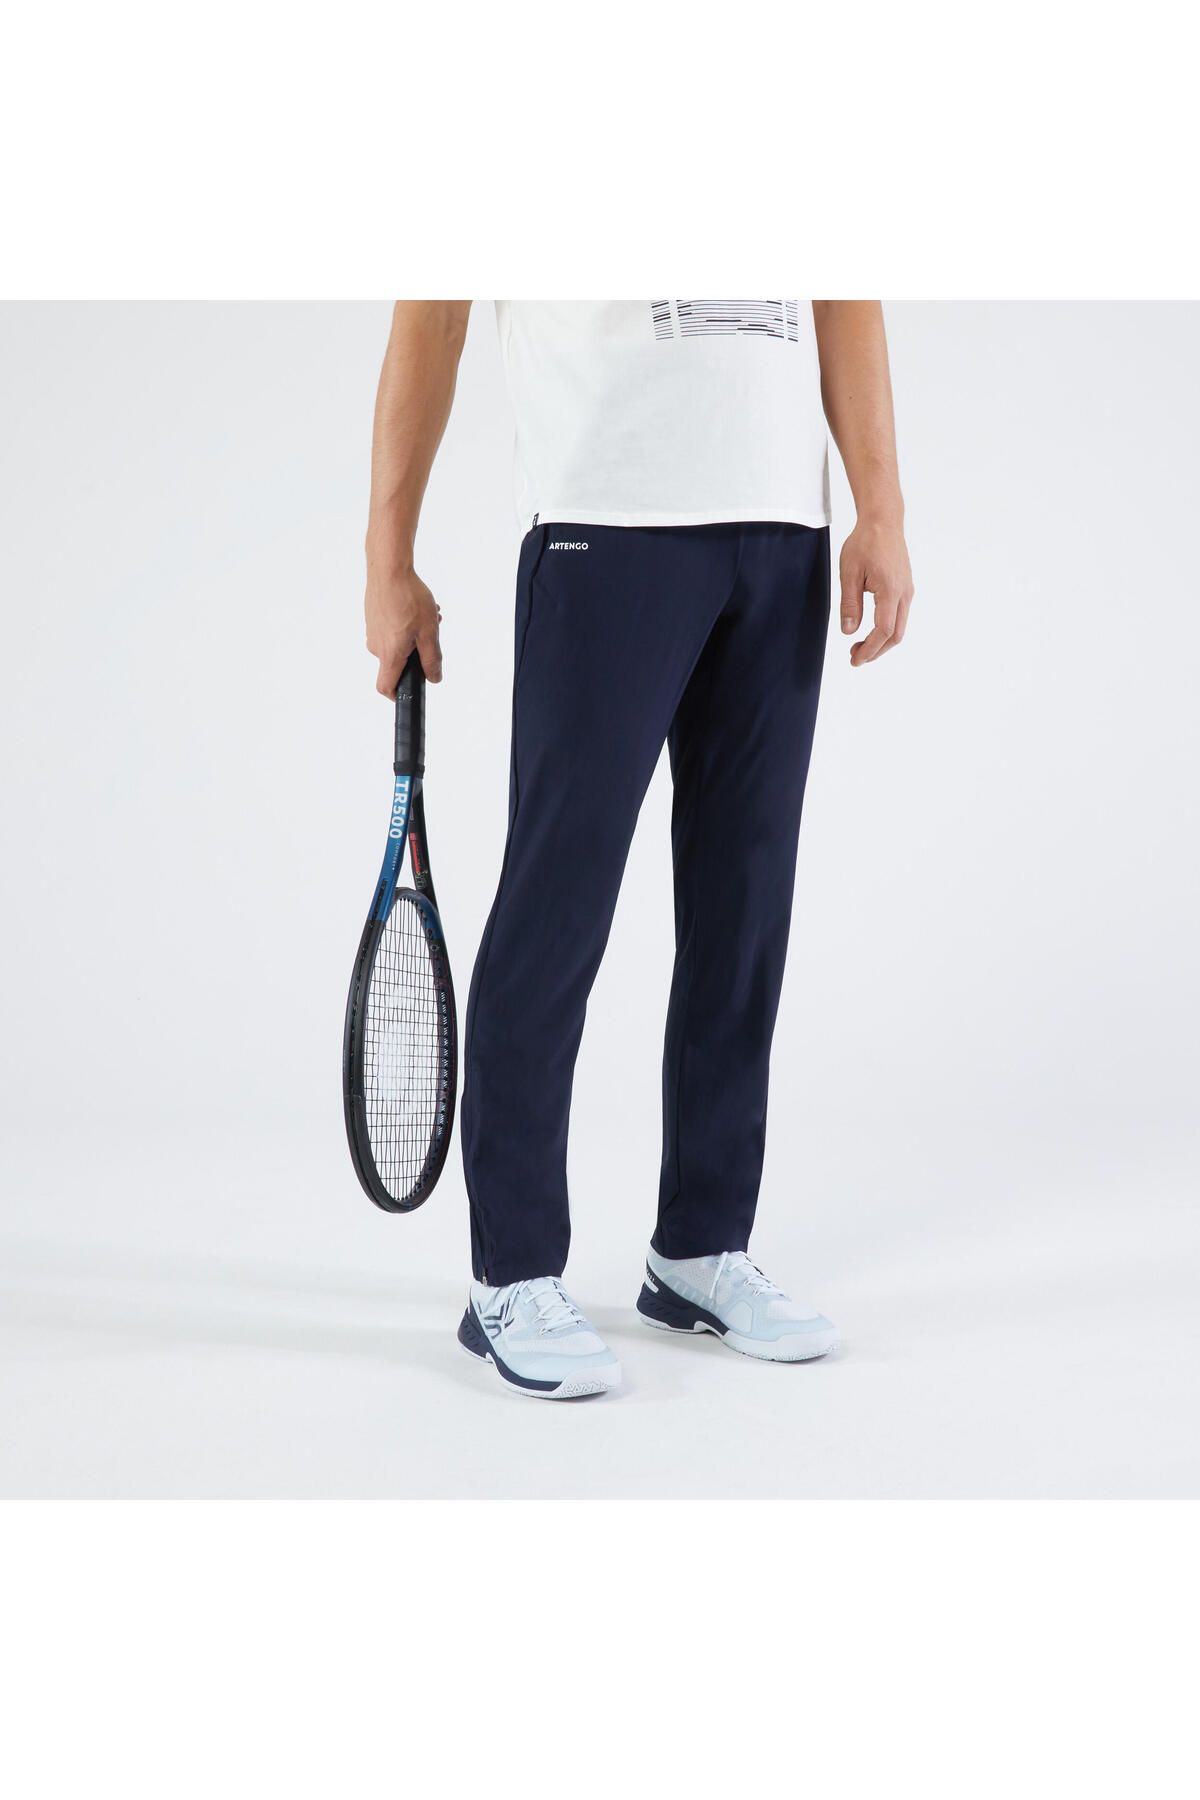 Decathlon Erkek Tenis Eşofman Altı - Lacivert - Essential